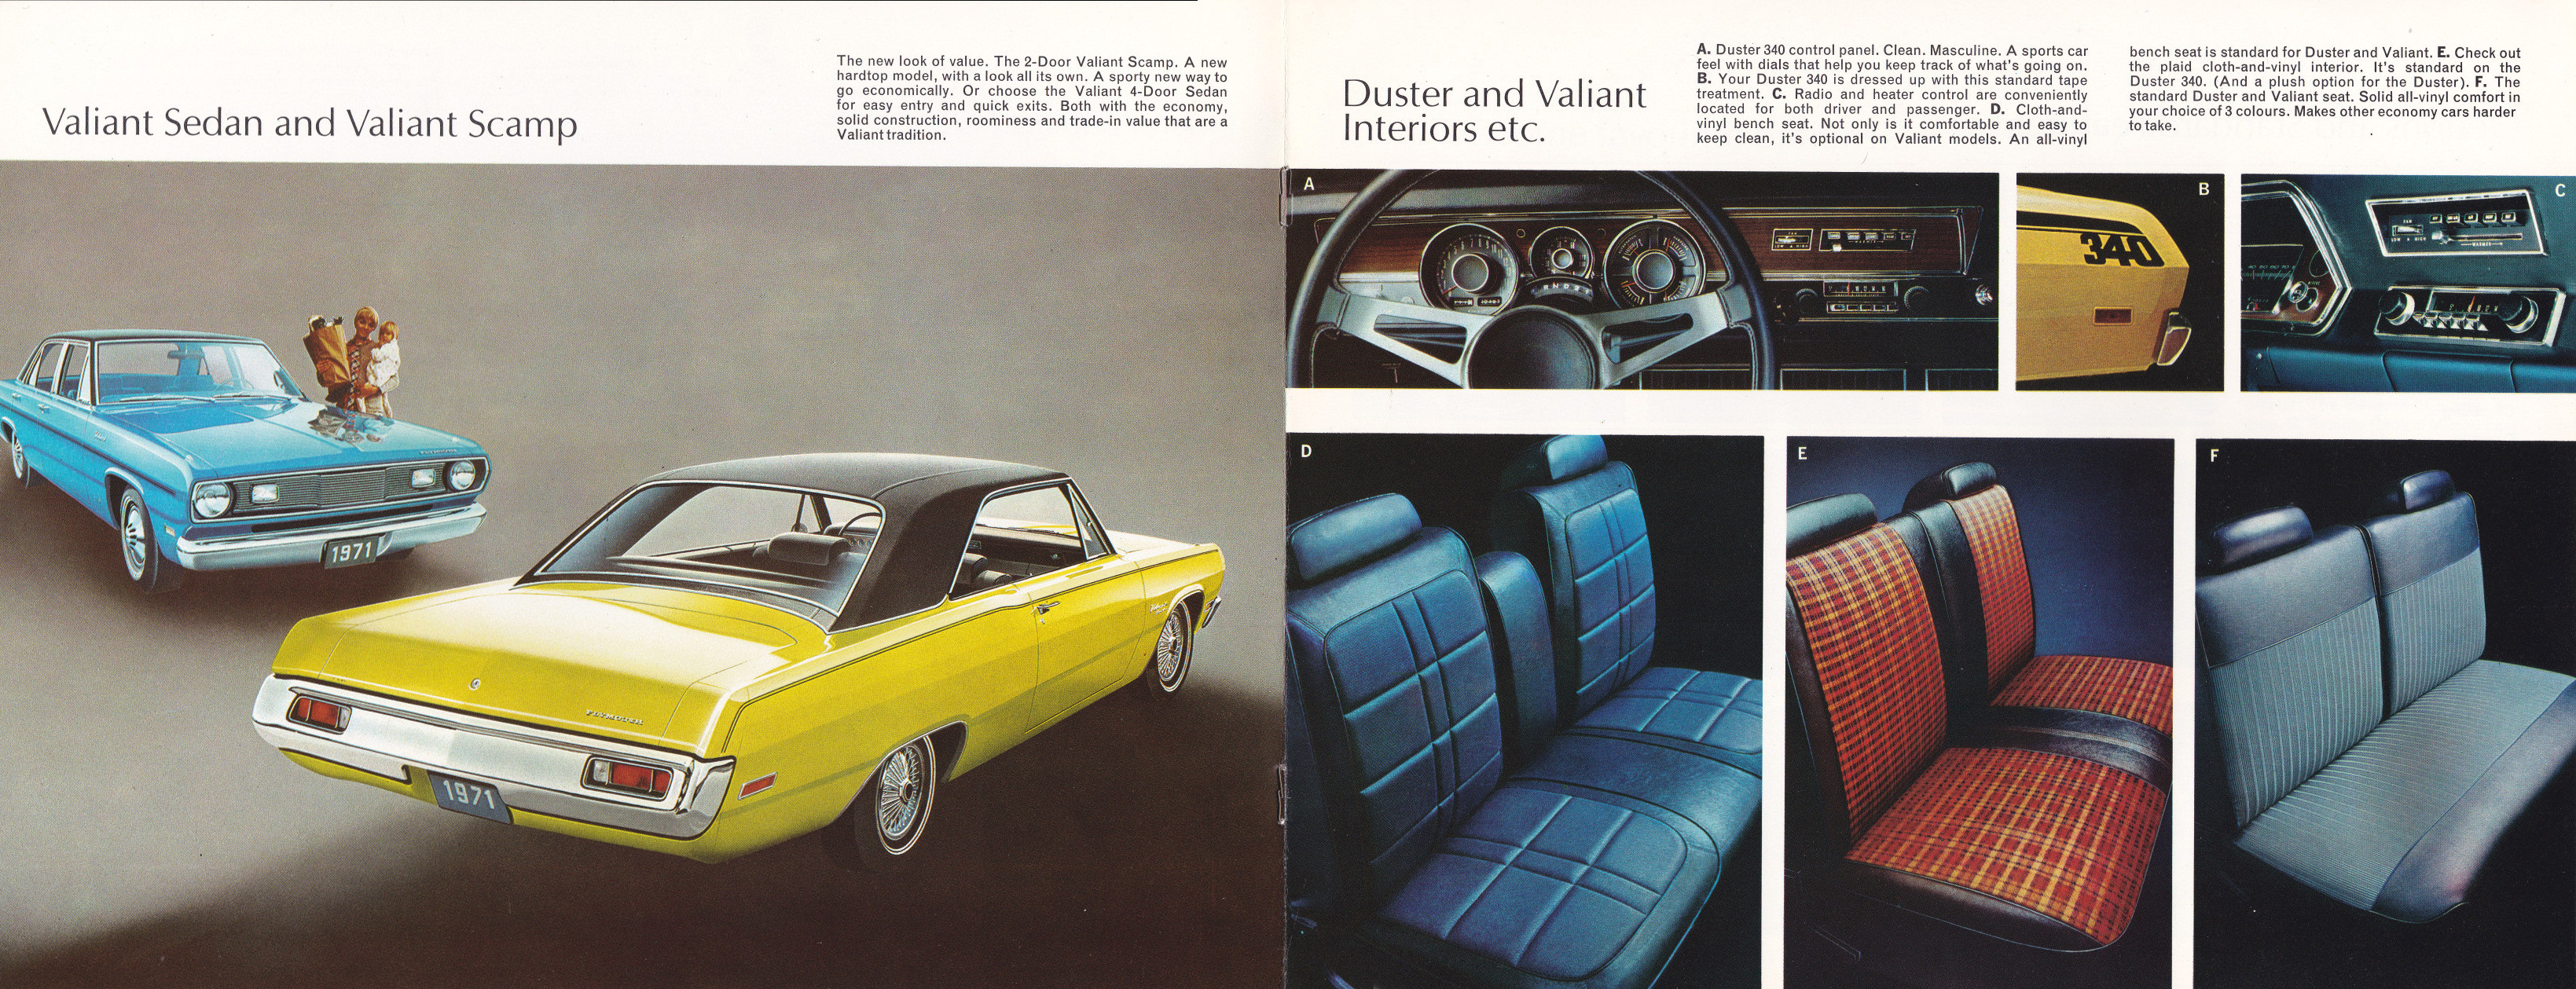 1971_Plymouth_Valiant-Duster_Cdn-04-05